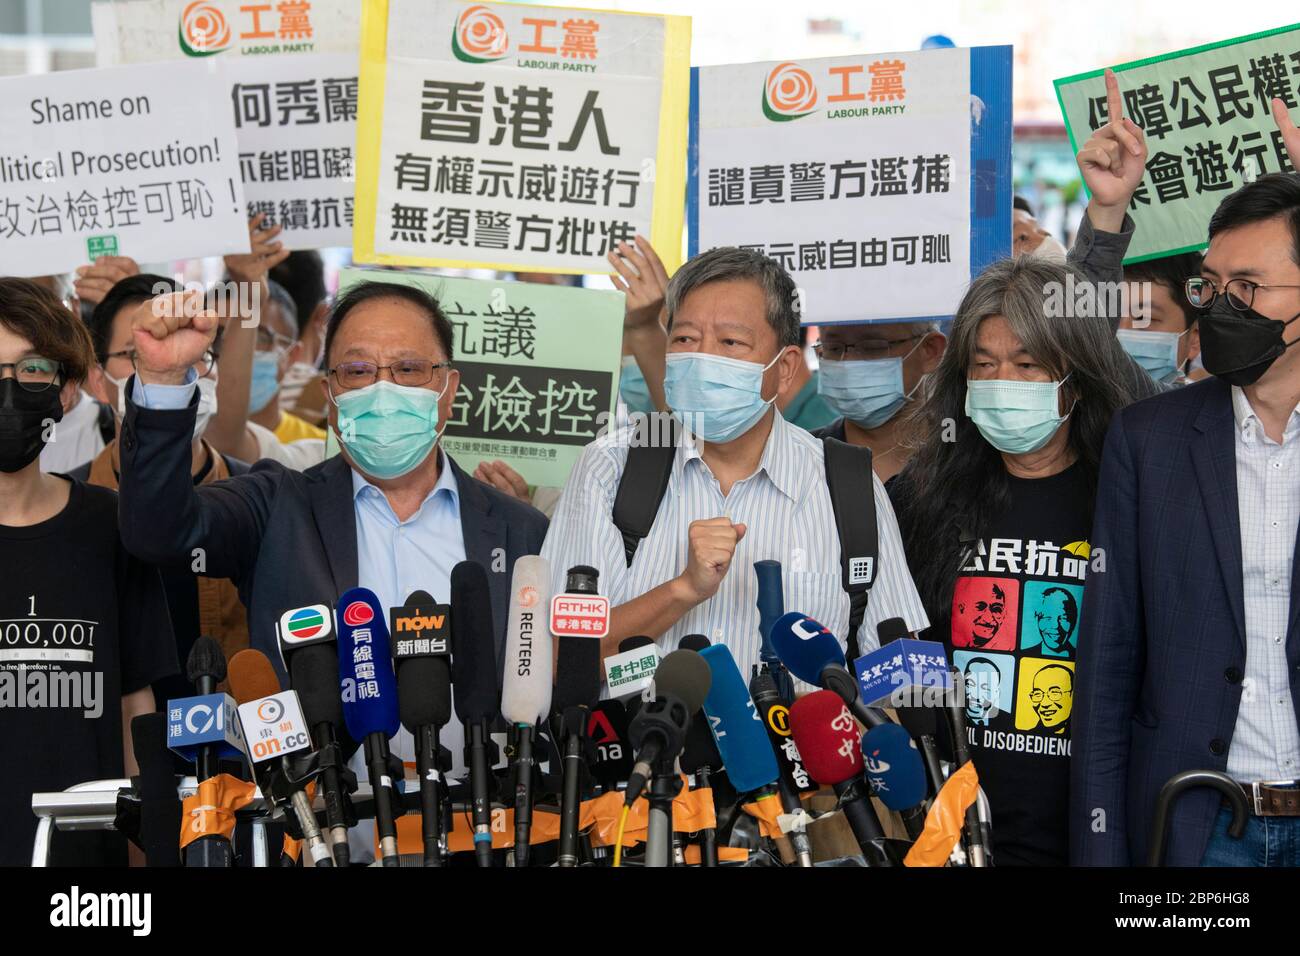 HONG KONG, HONG KONG RAE, CHINA: 18 DE MAYO DE 2020. La Democracia 15 aparece en el Tribunal de magistrados de Kowloon Occidental después de sus recientes arrestos. El grupo incluye a algunos de los actores más importantes en la lucha por la democracia en Hong Kong. El grupo se reúne con los medios de comunicación el grupo incluye Cyd Ho Sau-lan, Martin Lee, Yeung Sum (L), sin Chung-Kai, Albert Ho Chun-yan, Au NOK-Hin, Richard Tsoi, Margaret ng, Jimmy Lai, Lee Cheuk-Yan (M), Leung Yiu-Chung (L), Raphael-Kwok-Hung, Wong-R, Walg Foto de stock